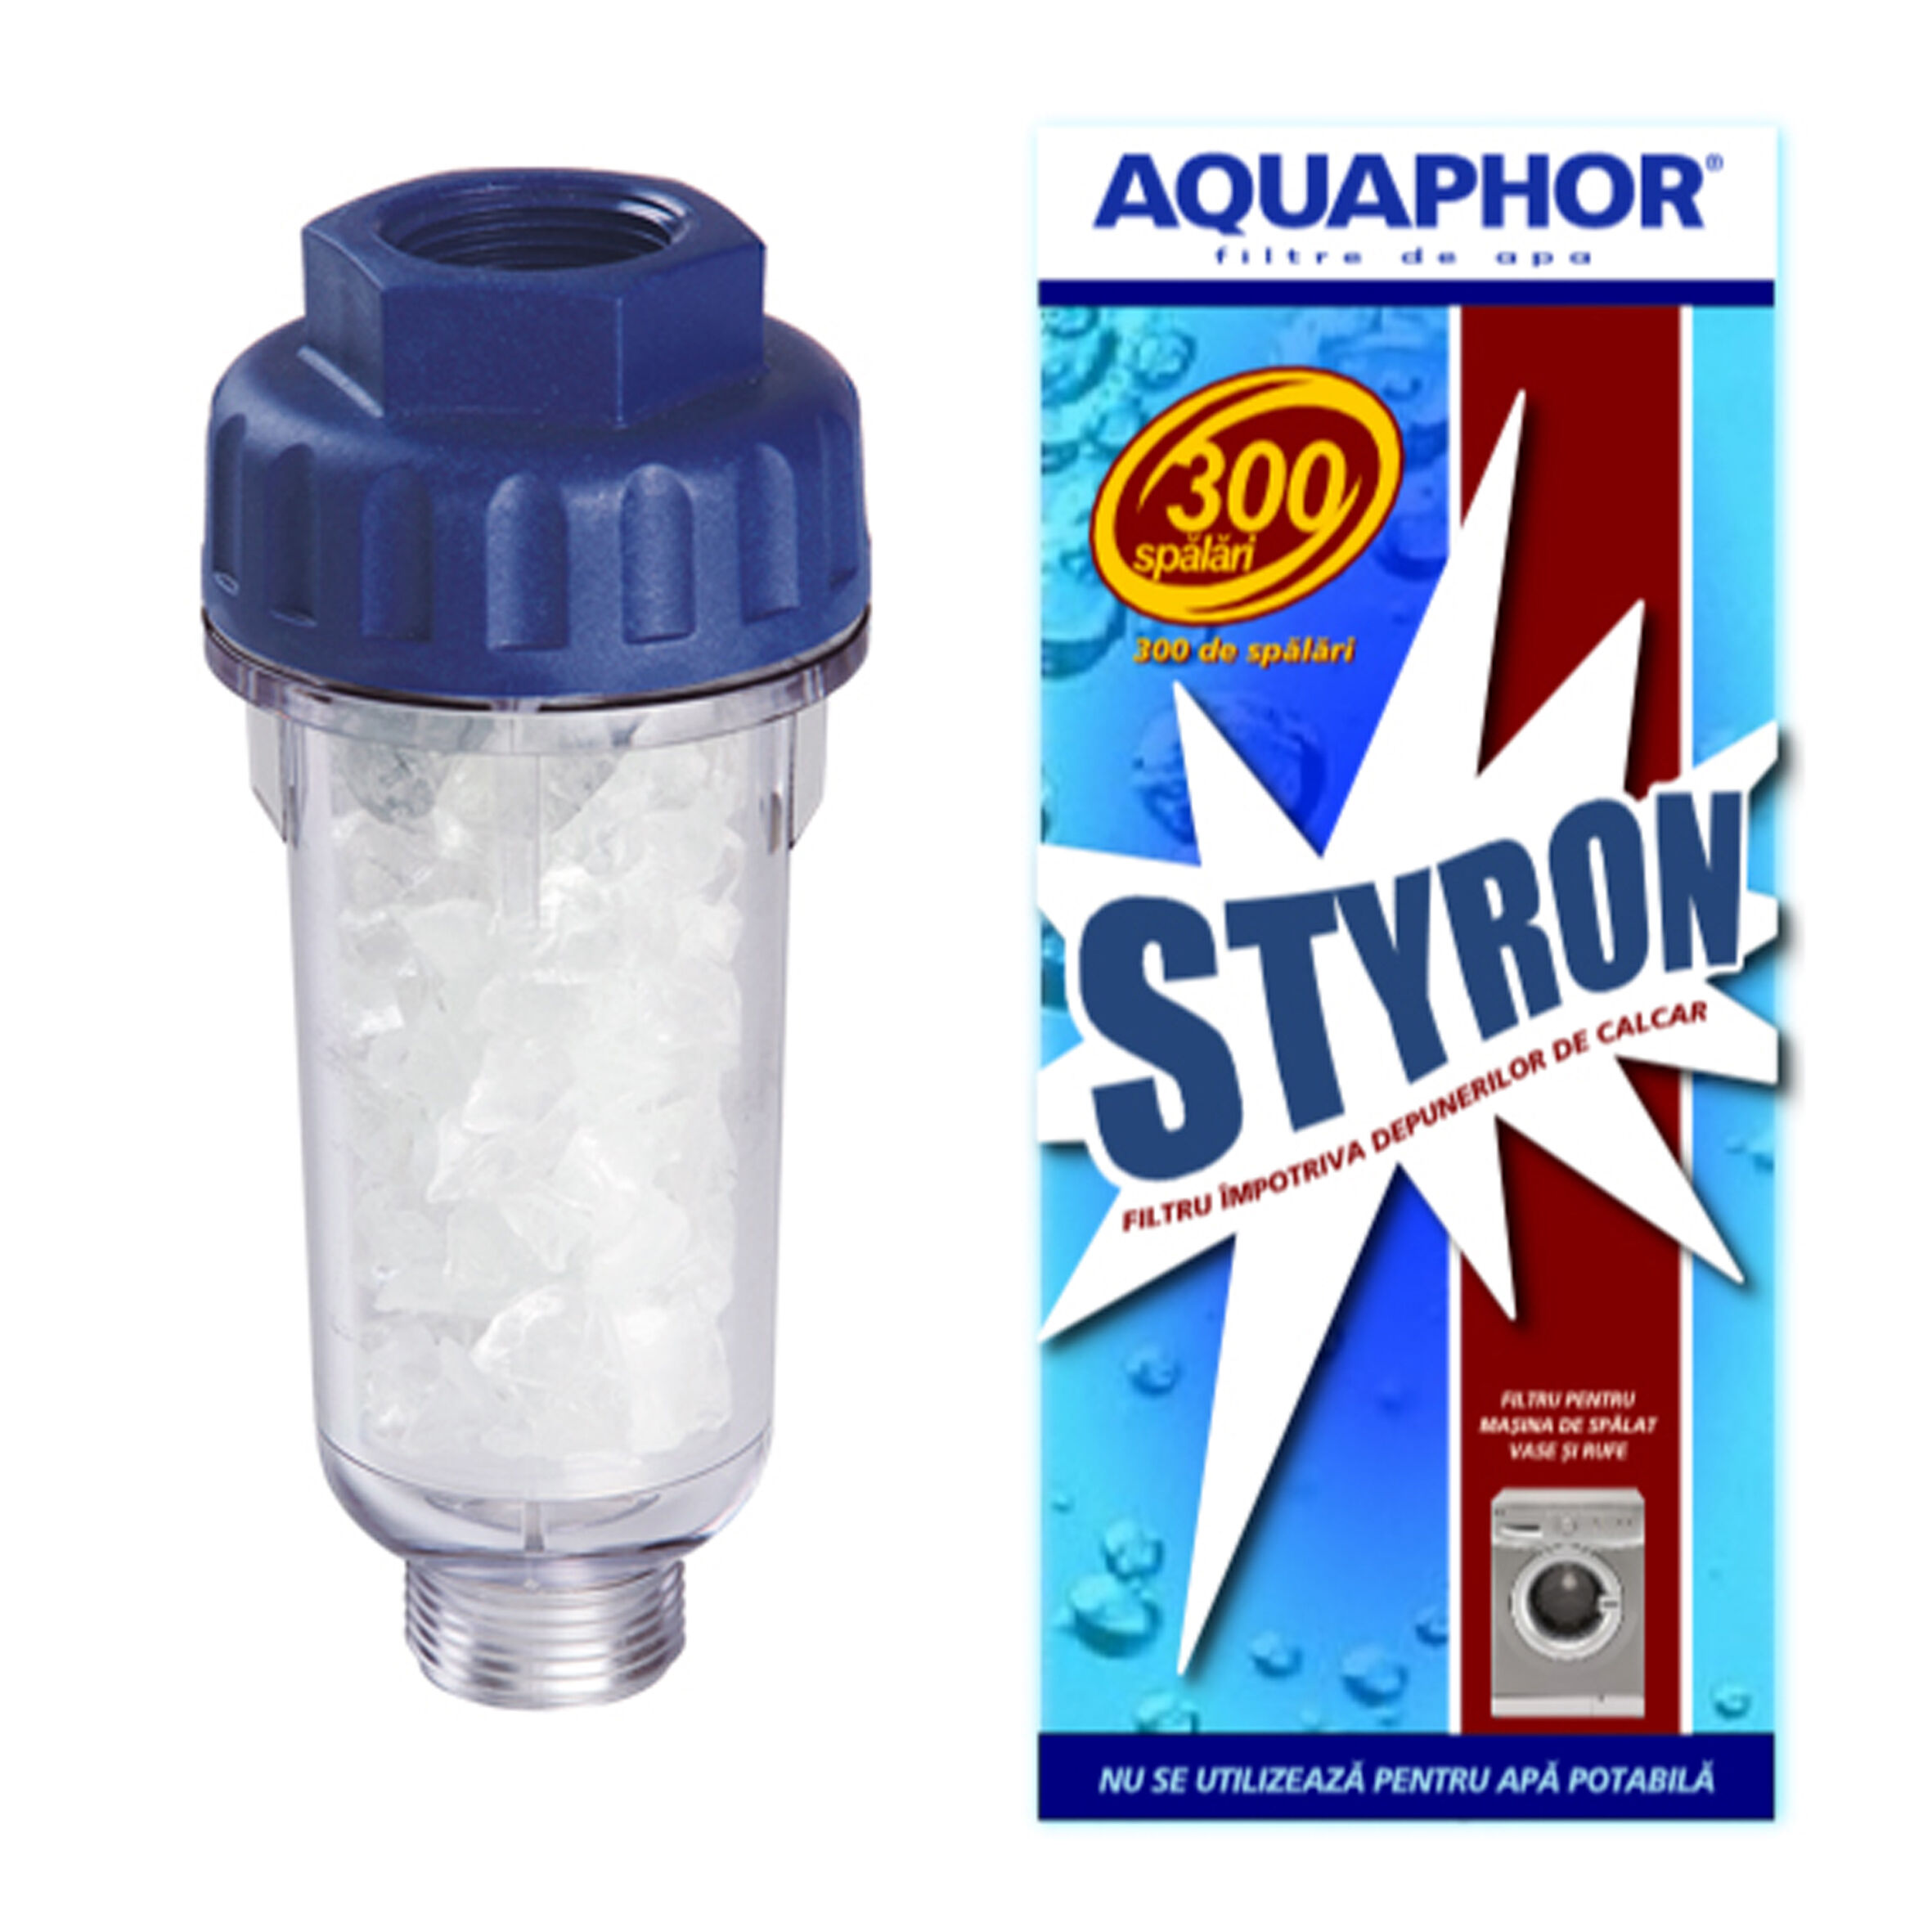 Aquaphor - Filtru masina spalat